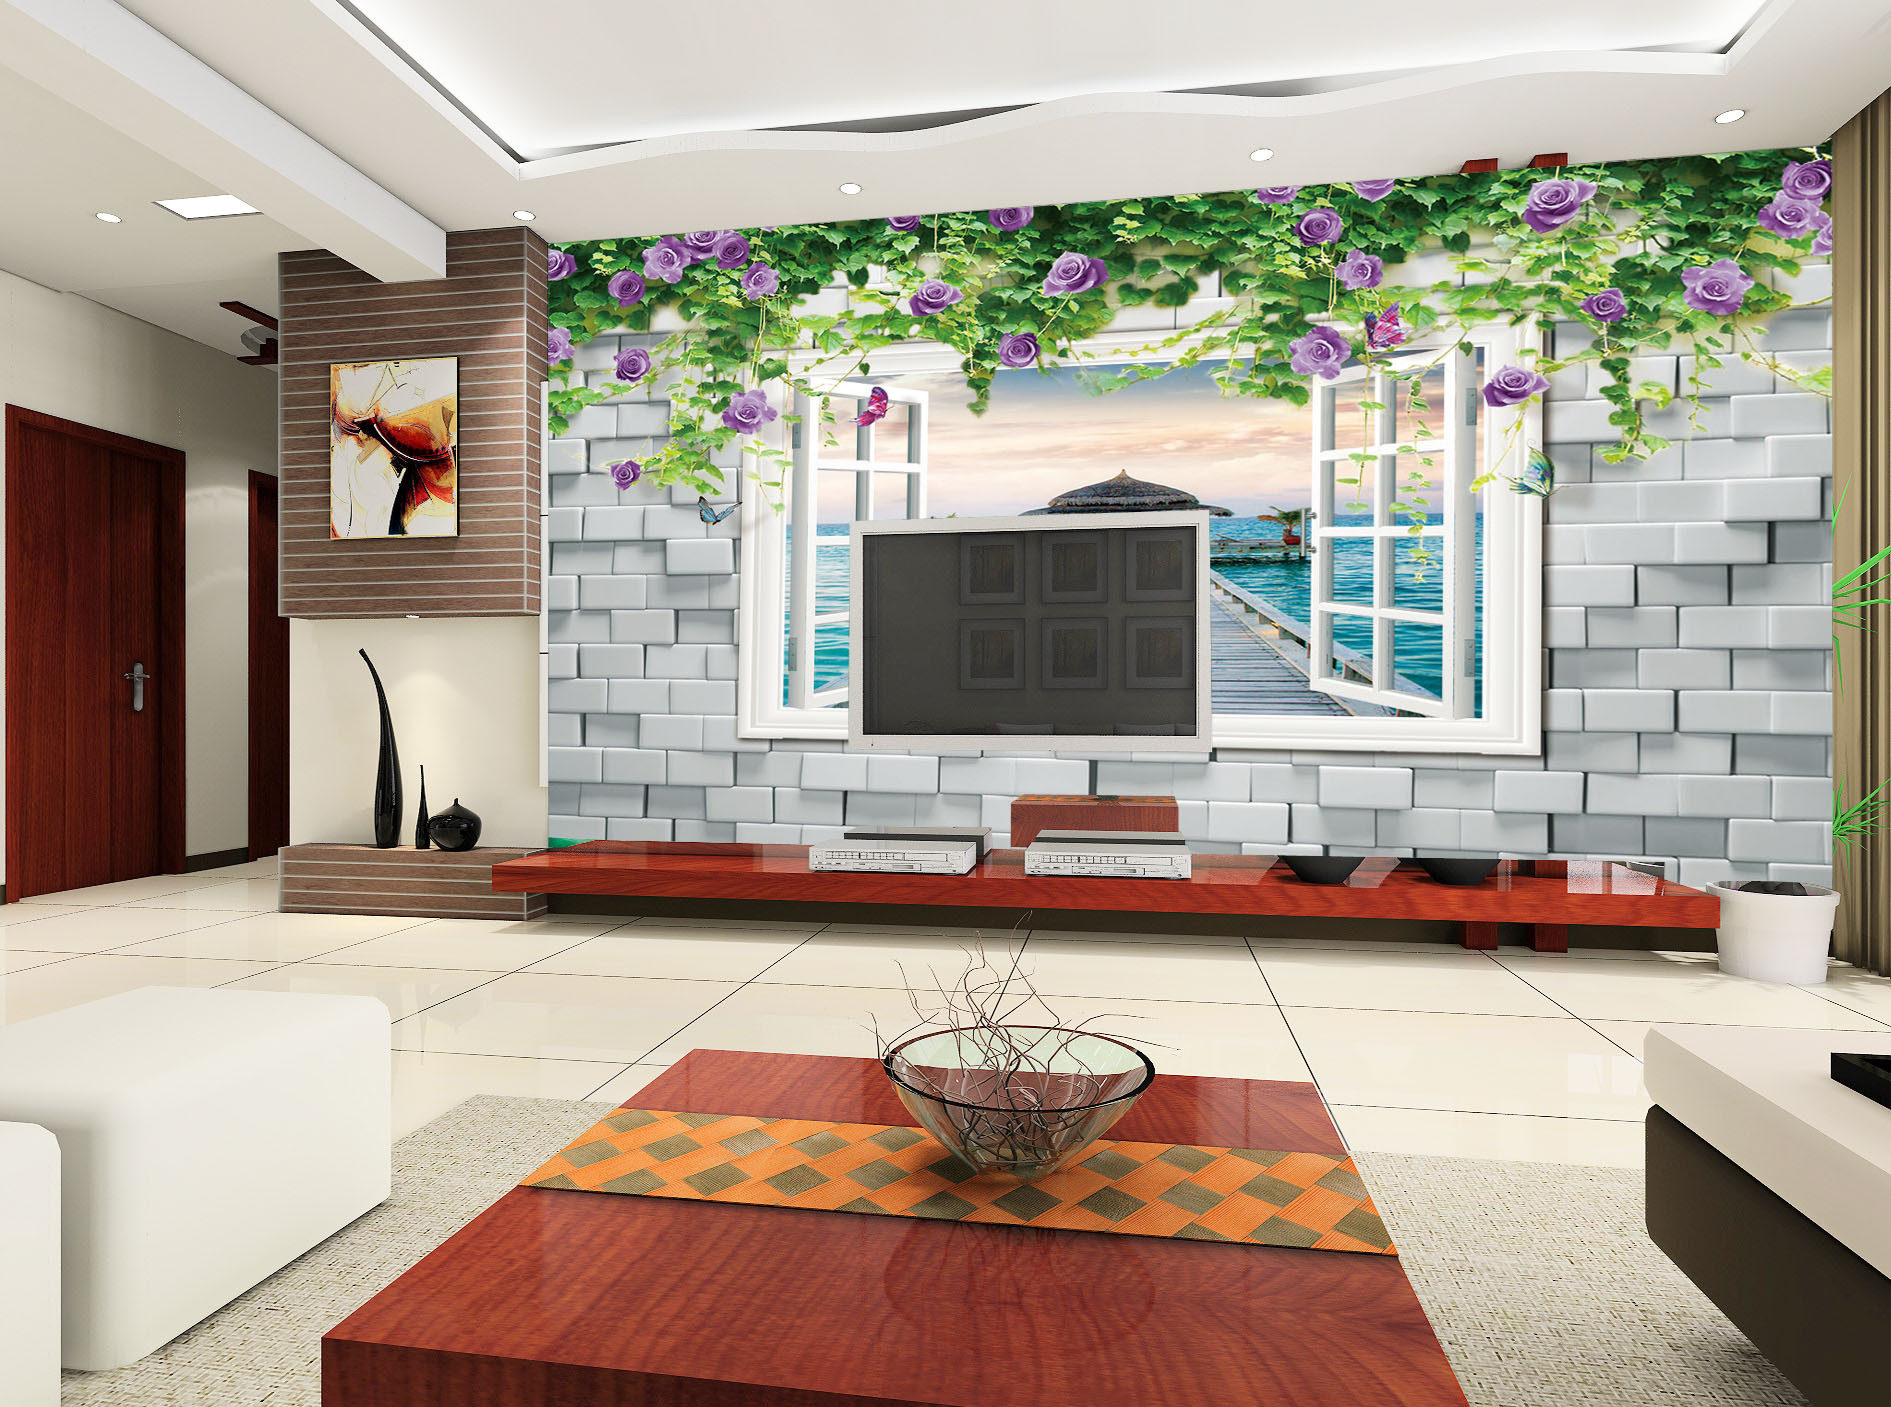 新中式客厅影视墙壁画图片大全 – 设计本装修效果图